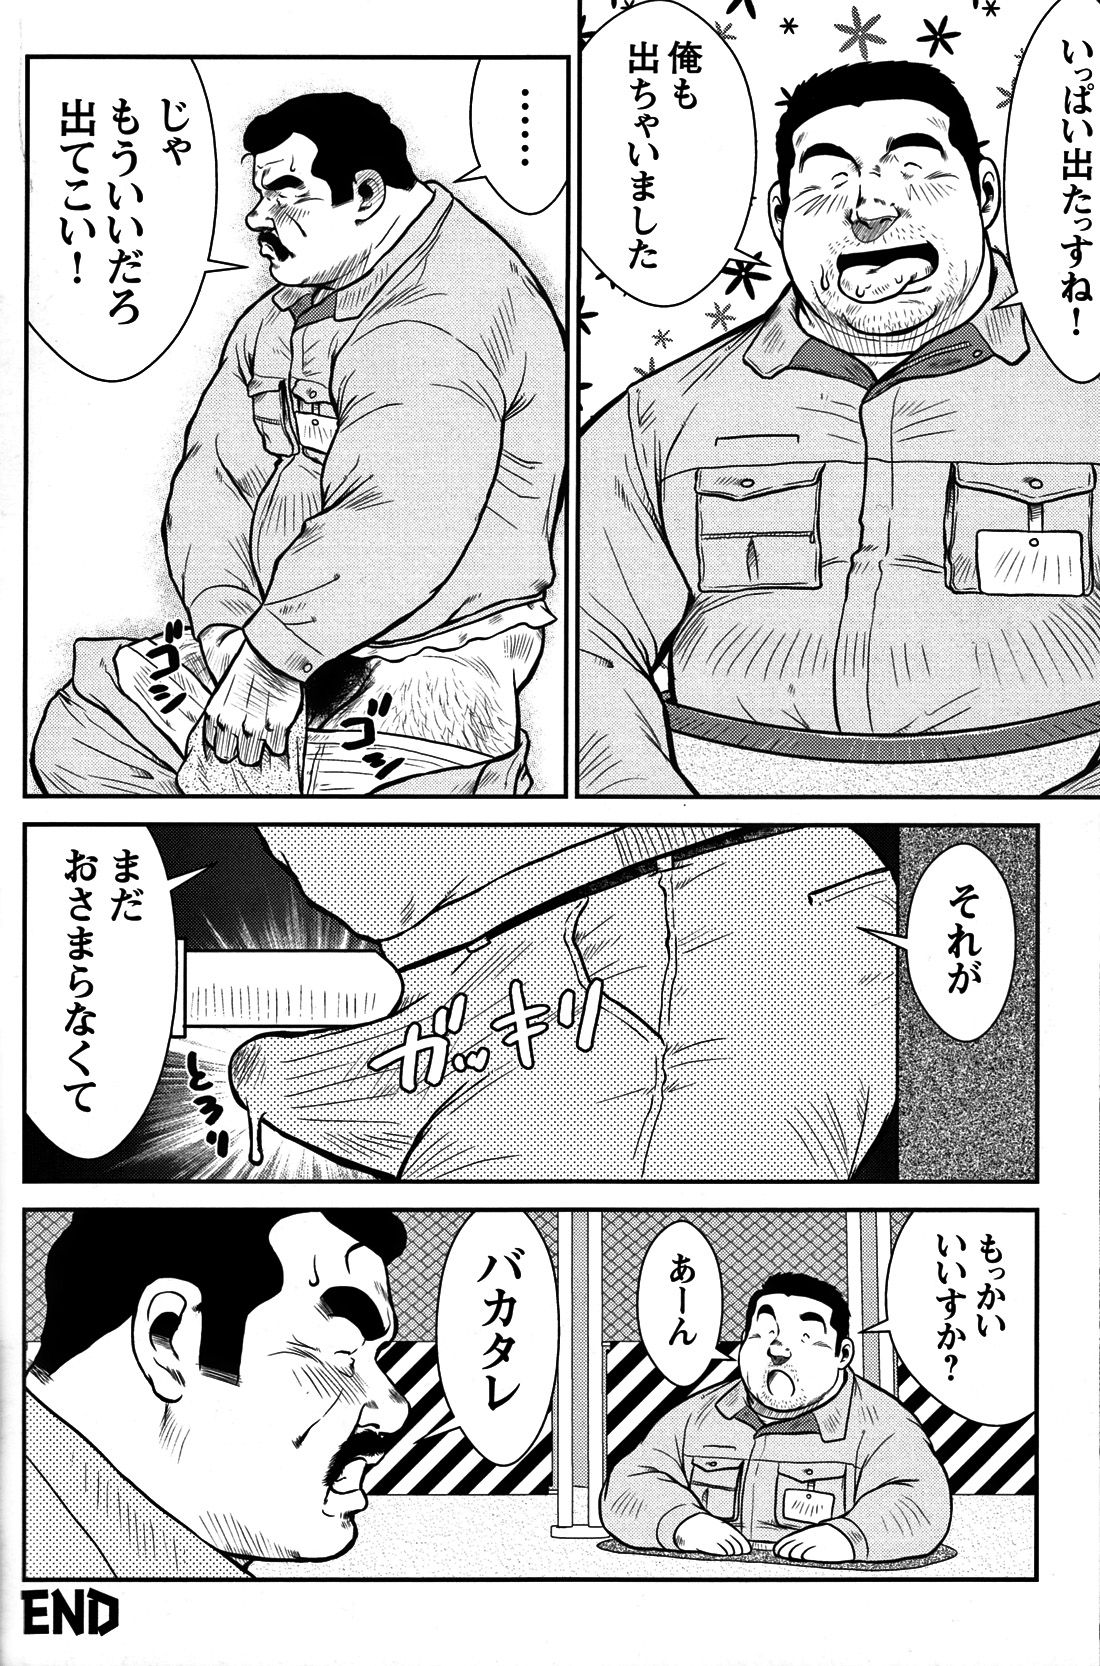 Comic G-men Gaho No. 06 Nikutai Roudousha page 35 full